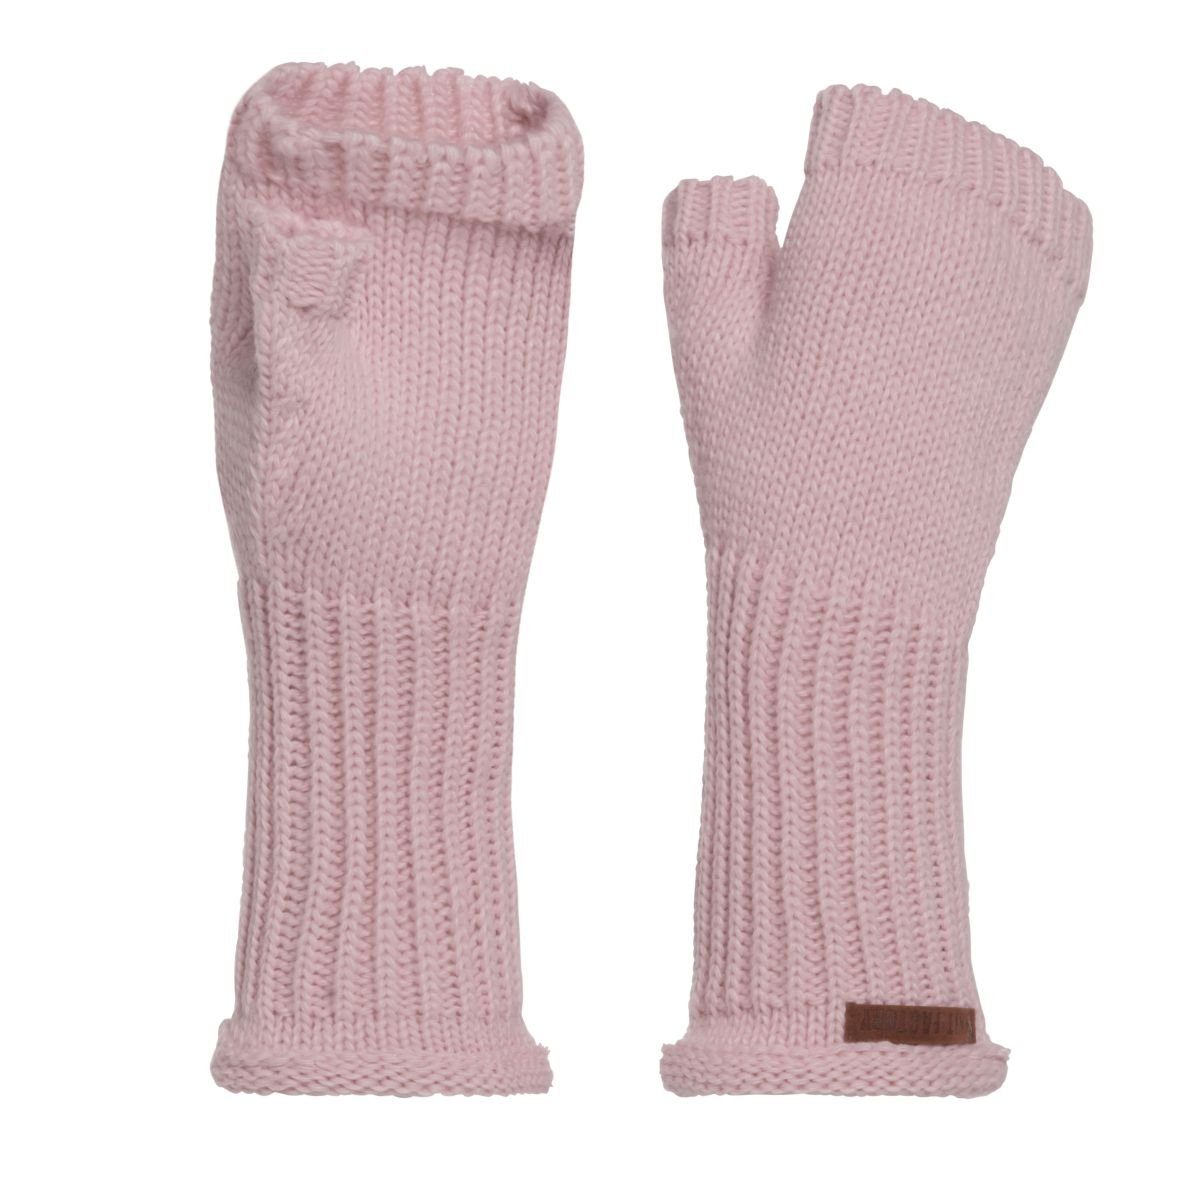 Knit Factory Strickhandschuhe Cleo Handschuhe One Size Glatt Rosa Handschuhe Handstulpen Handschuhe ihne Finger | Strickhandschuhe